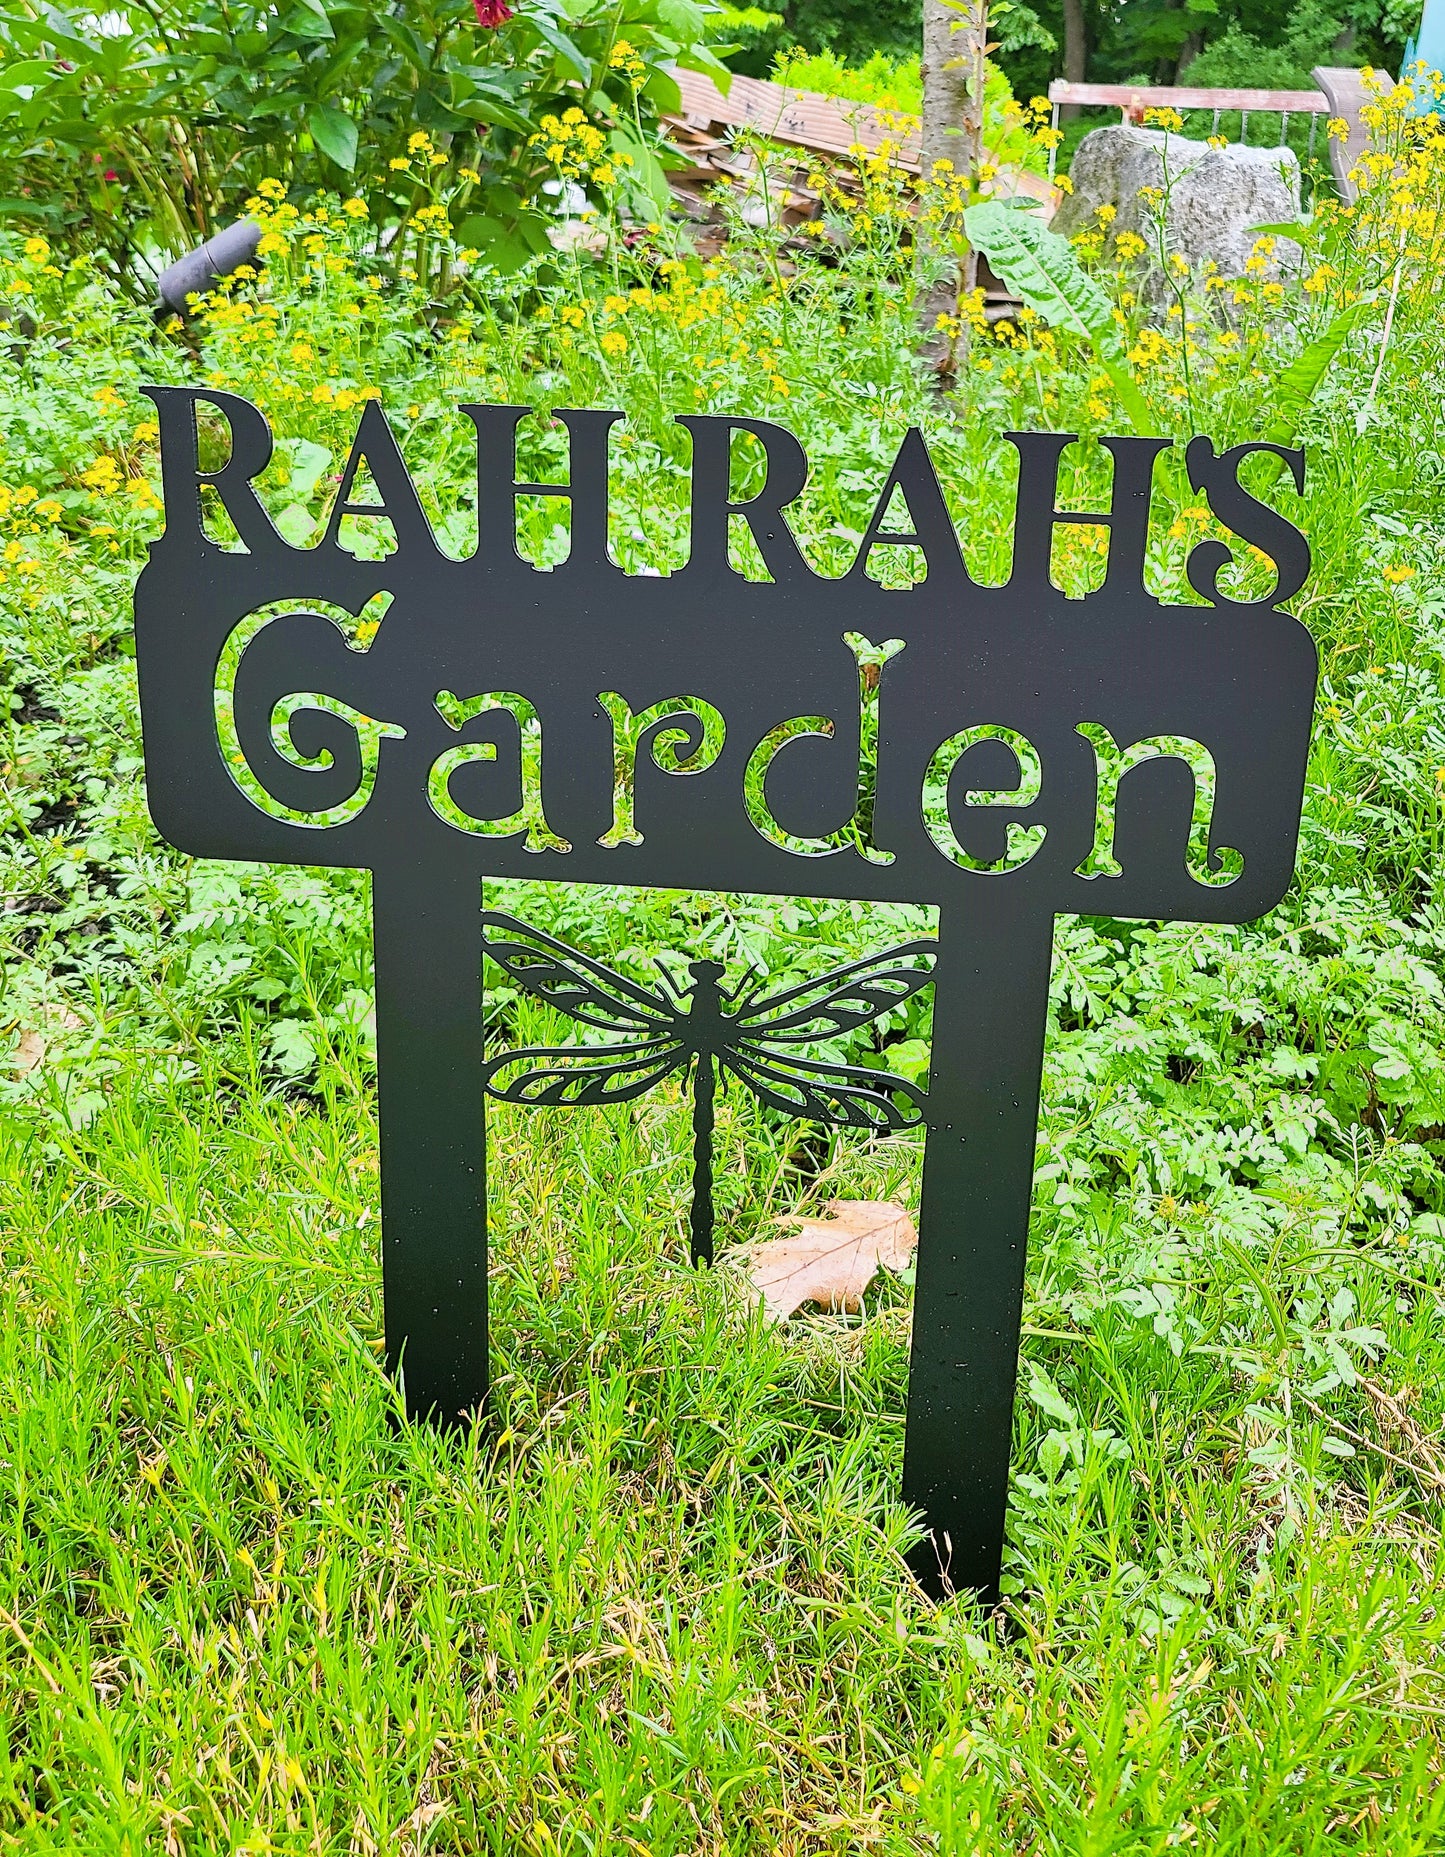 Garden Name Sign